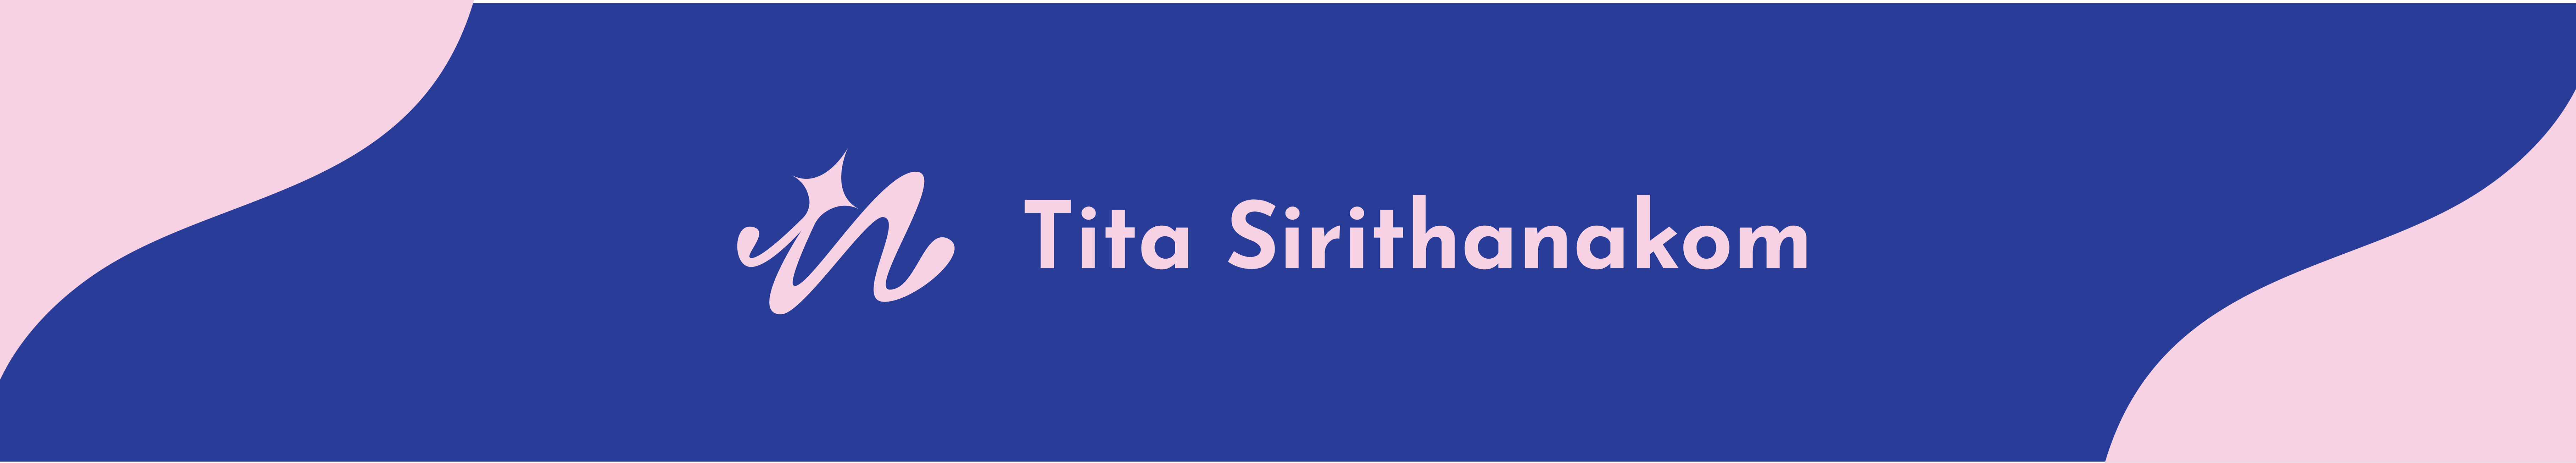 Banner del profilo di Tita Sirithankom